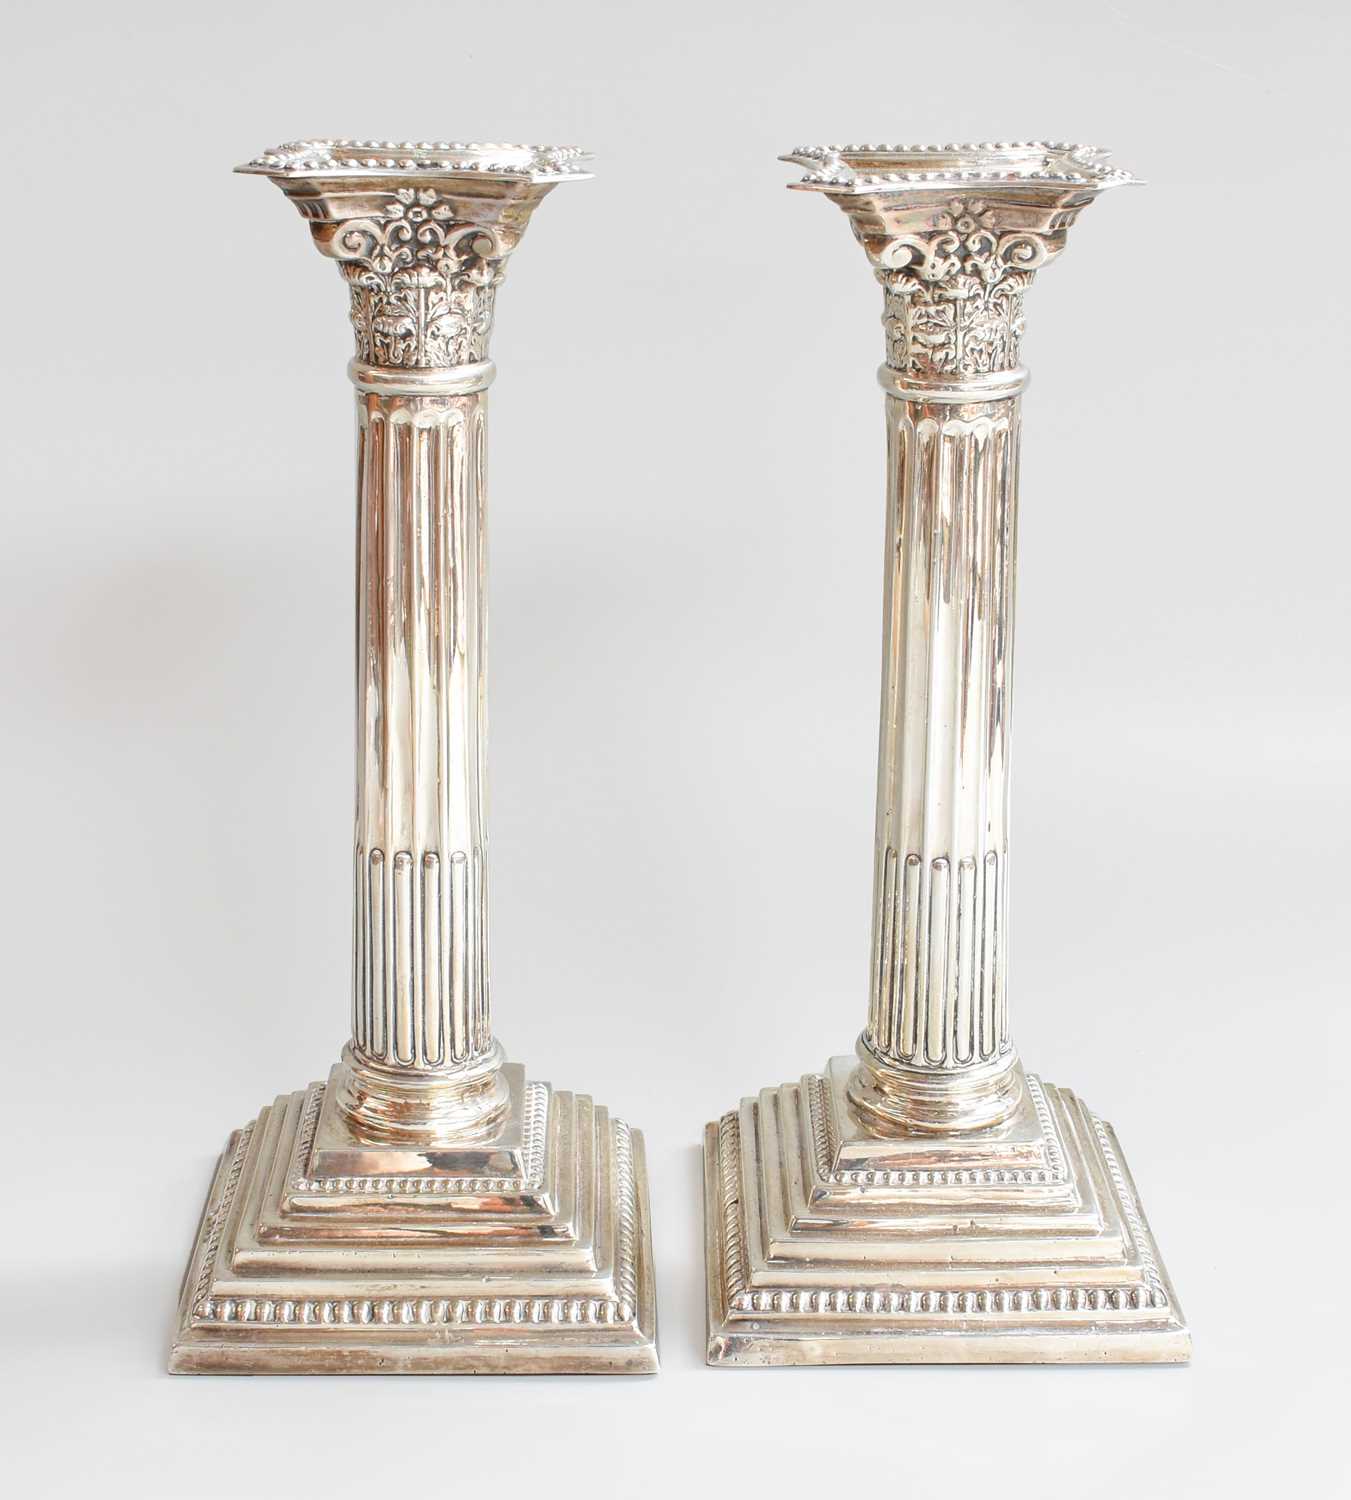 A Pair of George V Silver Candlesticks, by Williams (Birmingham) Ltd., Birmingham, 1920, each on